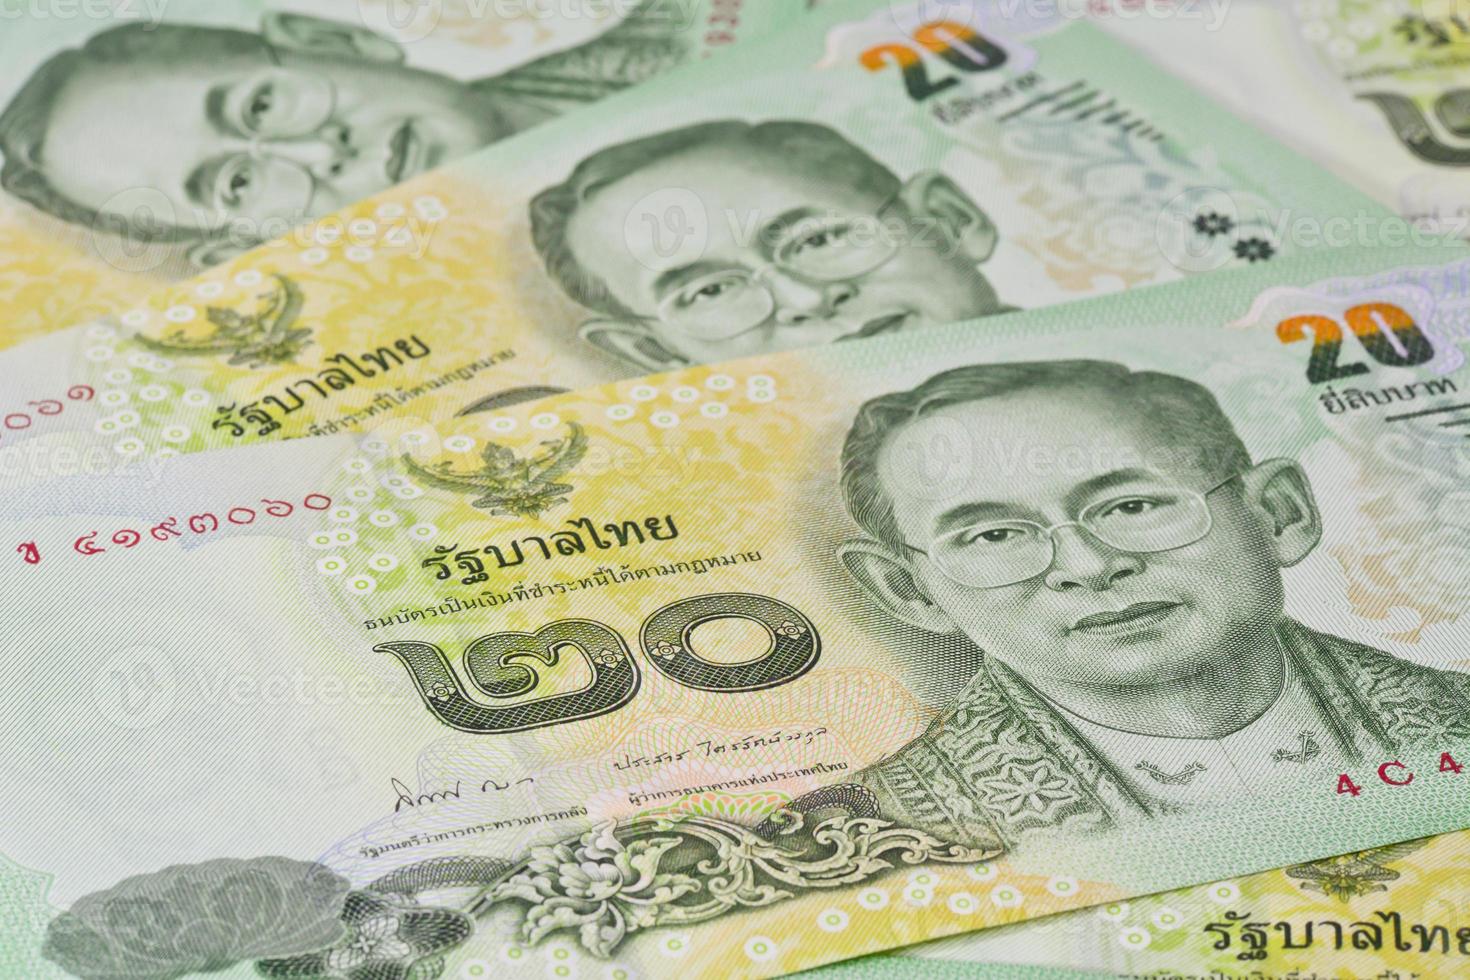 thailändska sedlar (baht) för pengar och affärsidéer foto